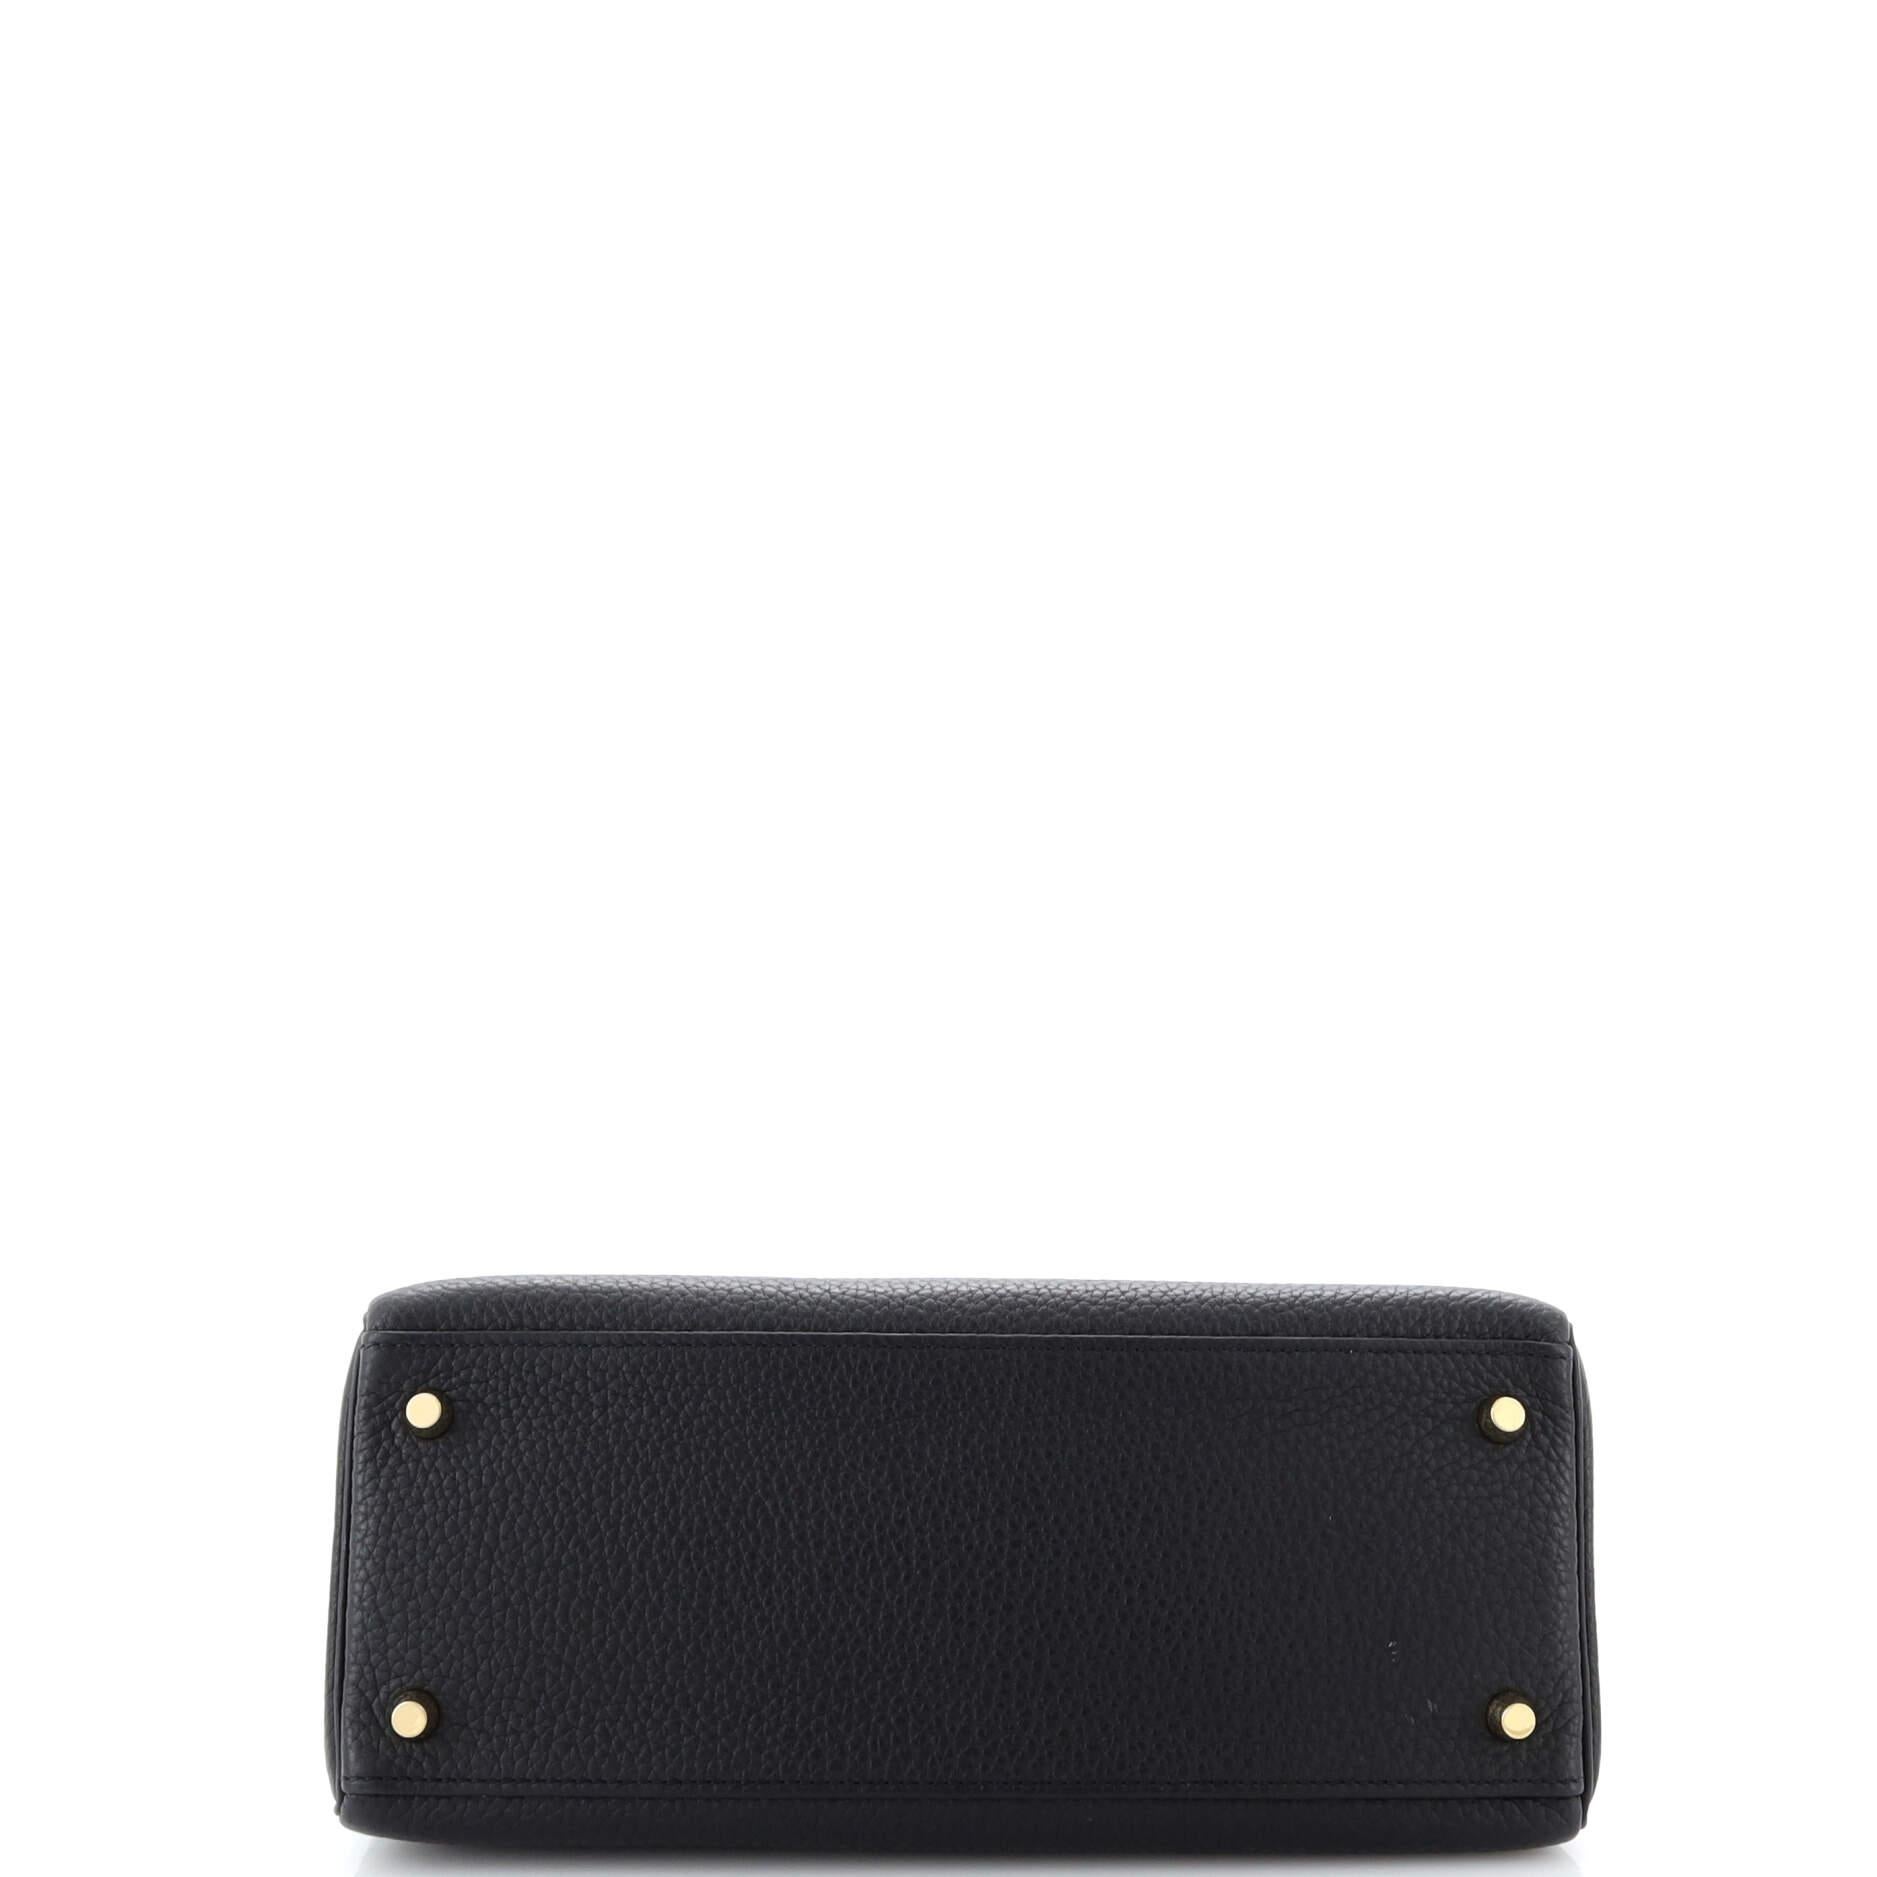 Hermes Kelly Handbag Noir Togo with Gold Hardware 28 1